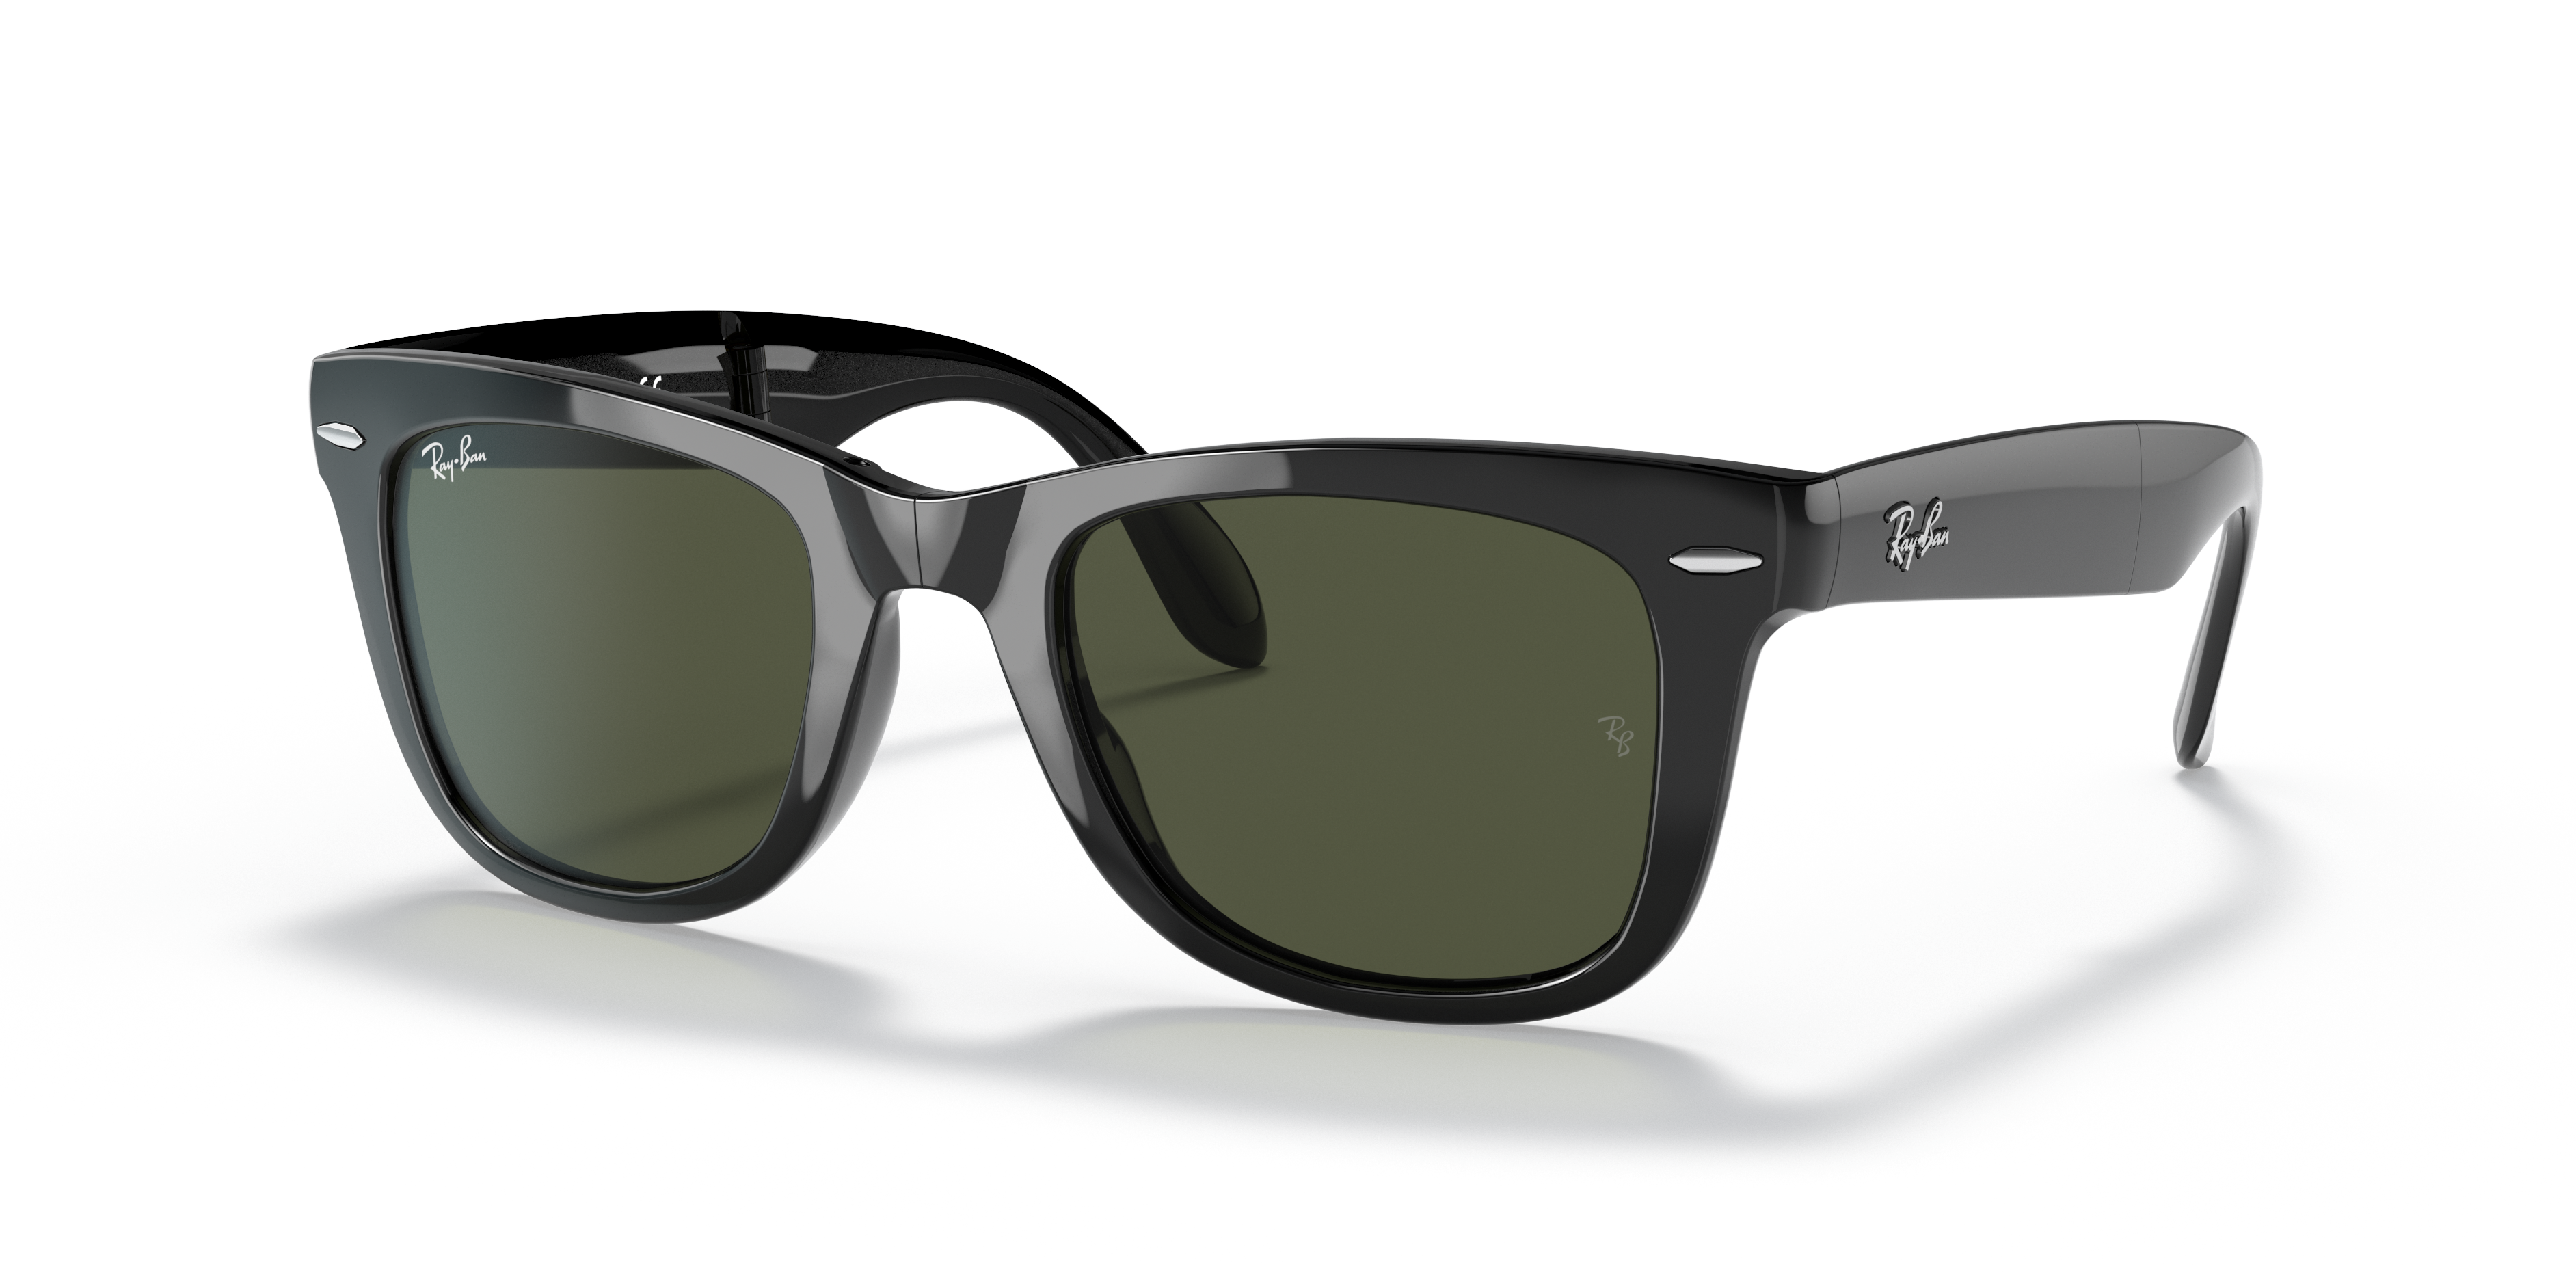 Buy Sunglance Retro Square, Wayfarer Sunglasses Black For Men & Women  Online @ Best Prices in India | Flipkart.com